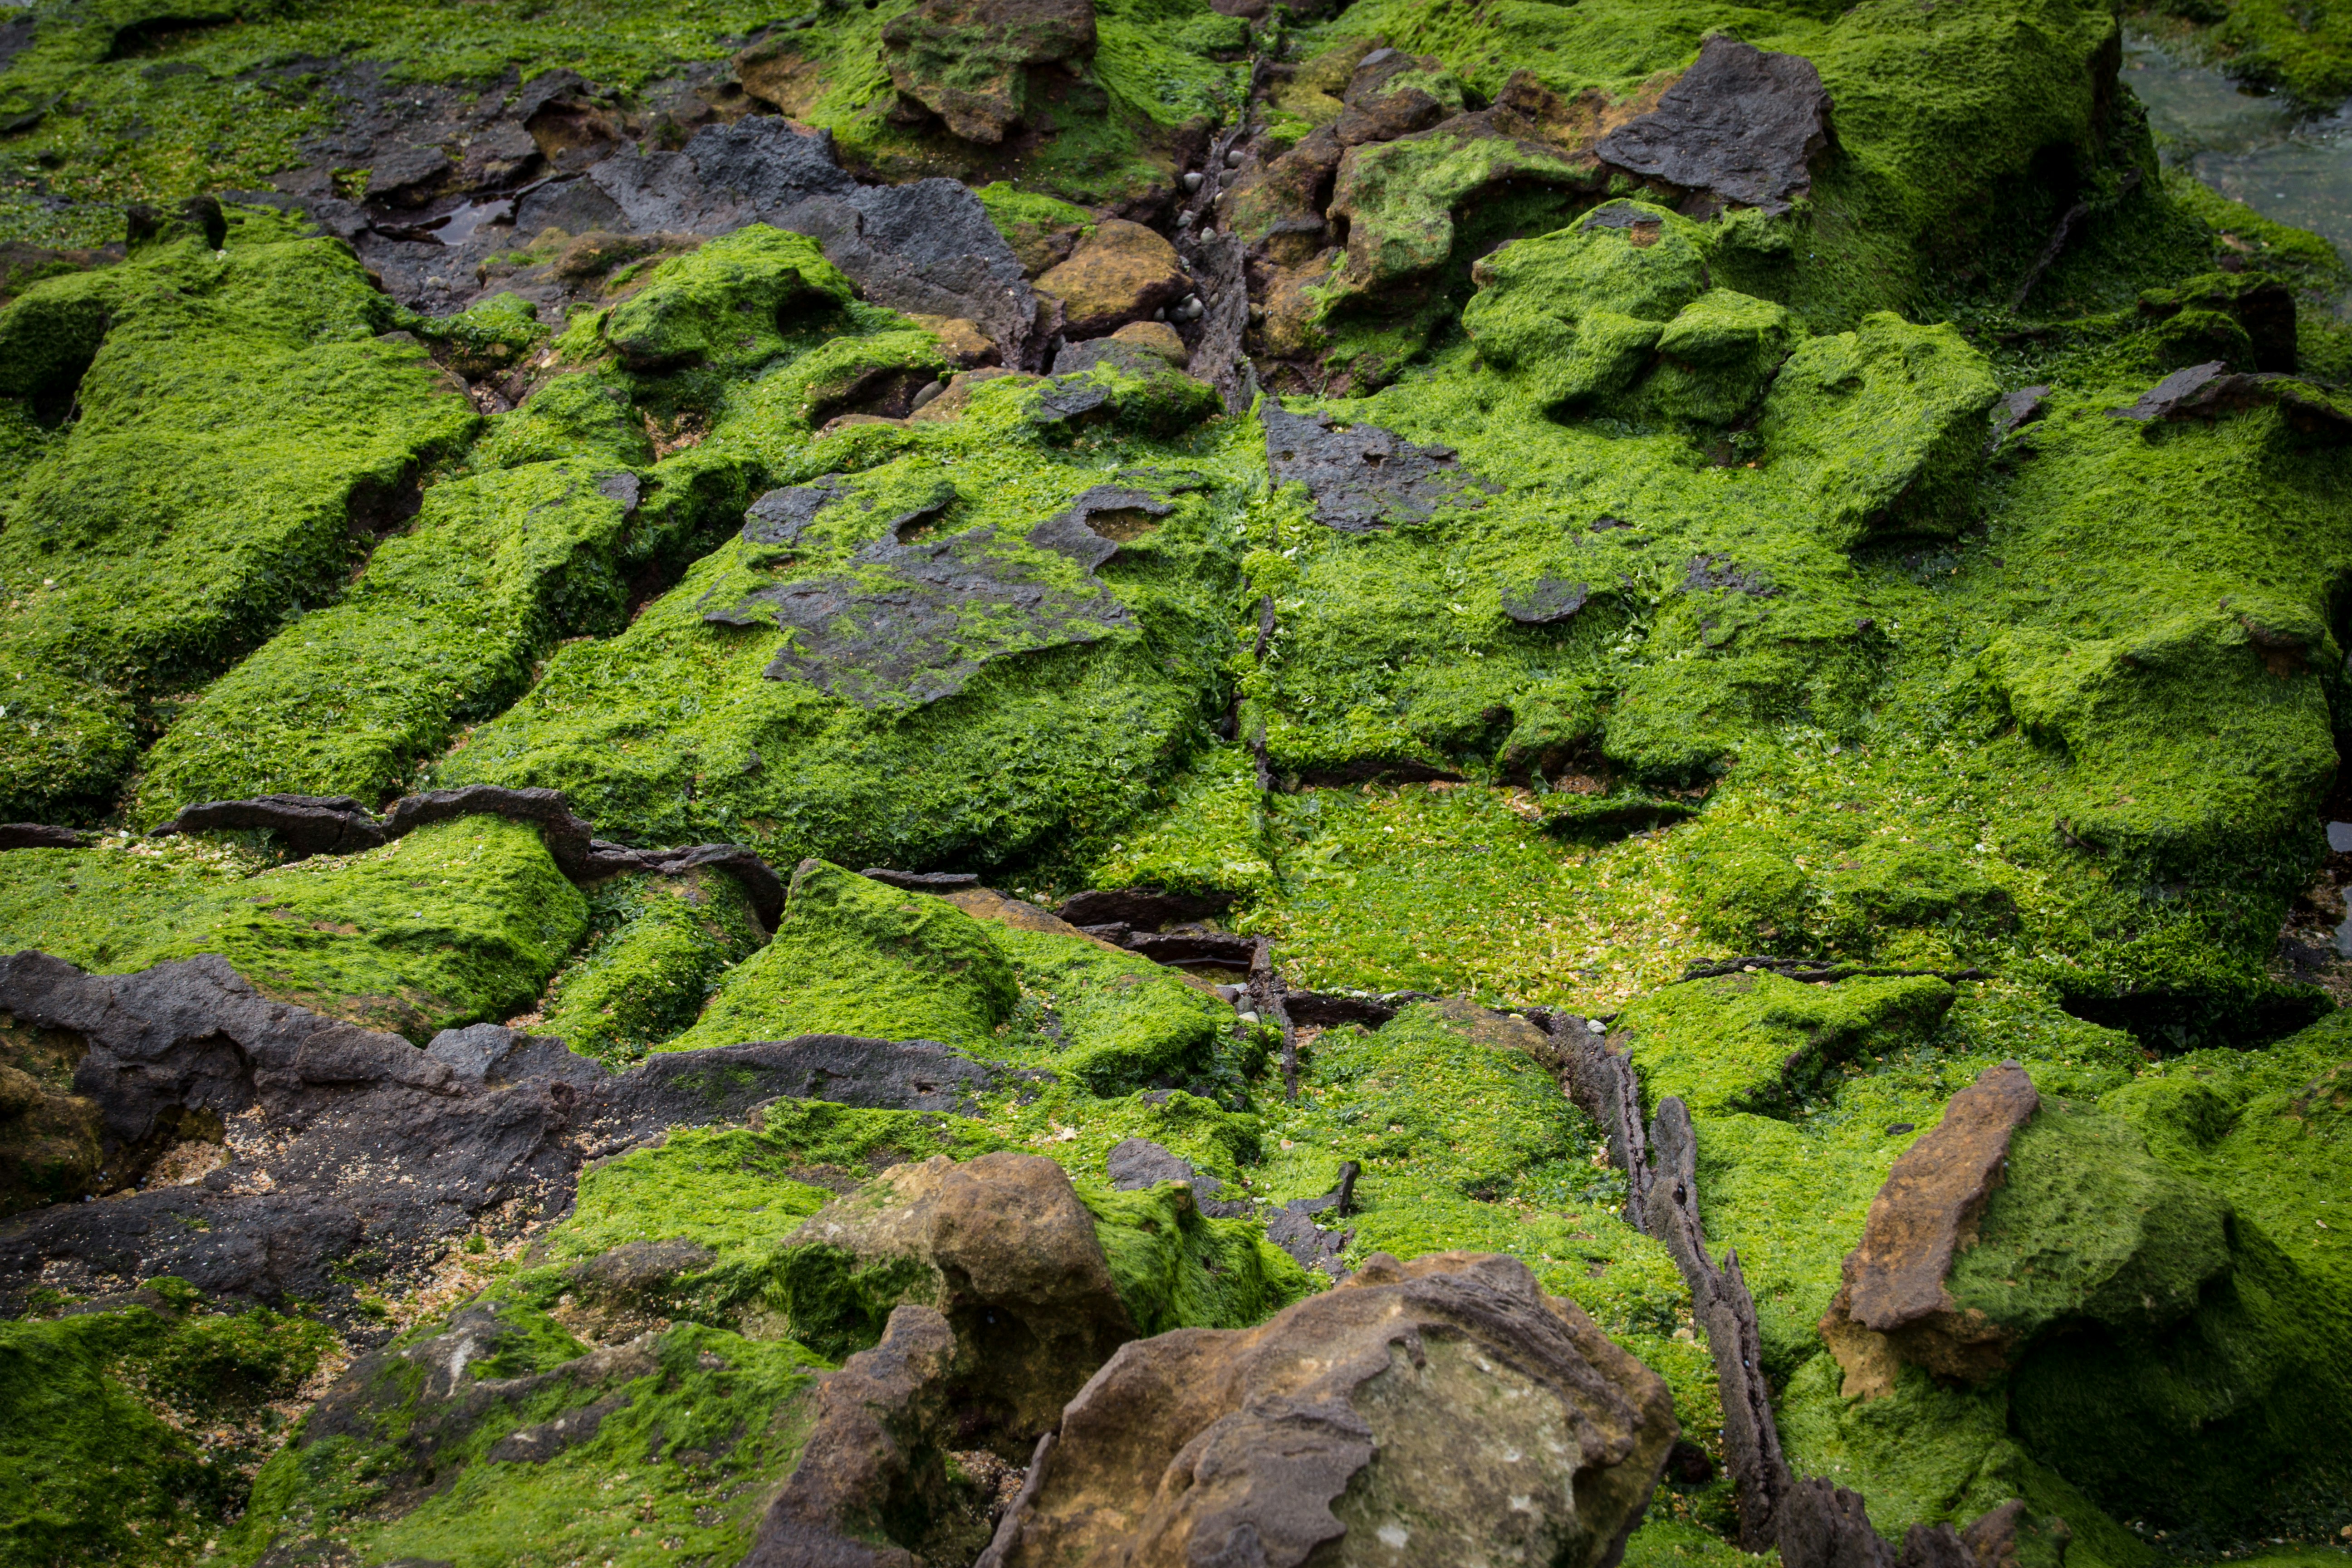 algae covered ground at daytime